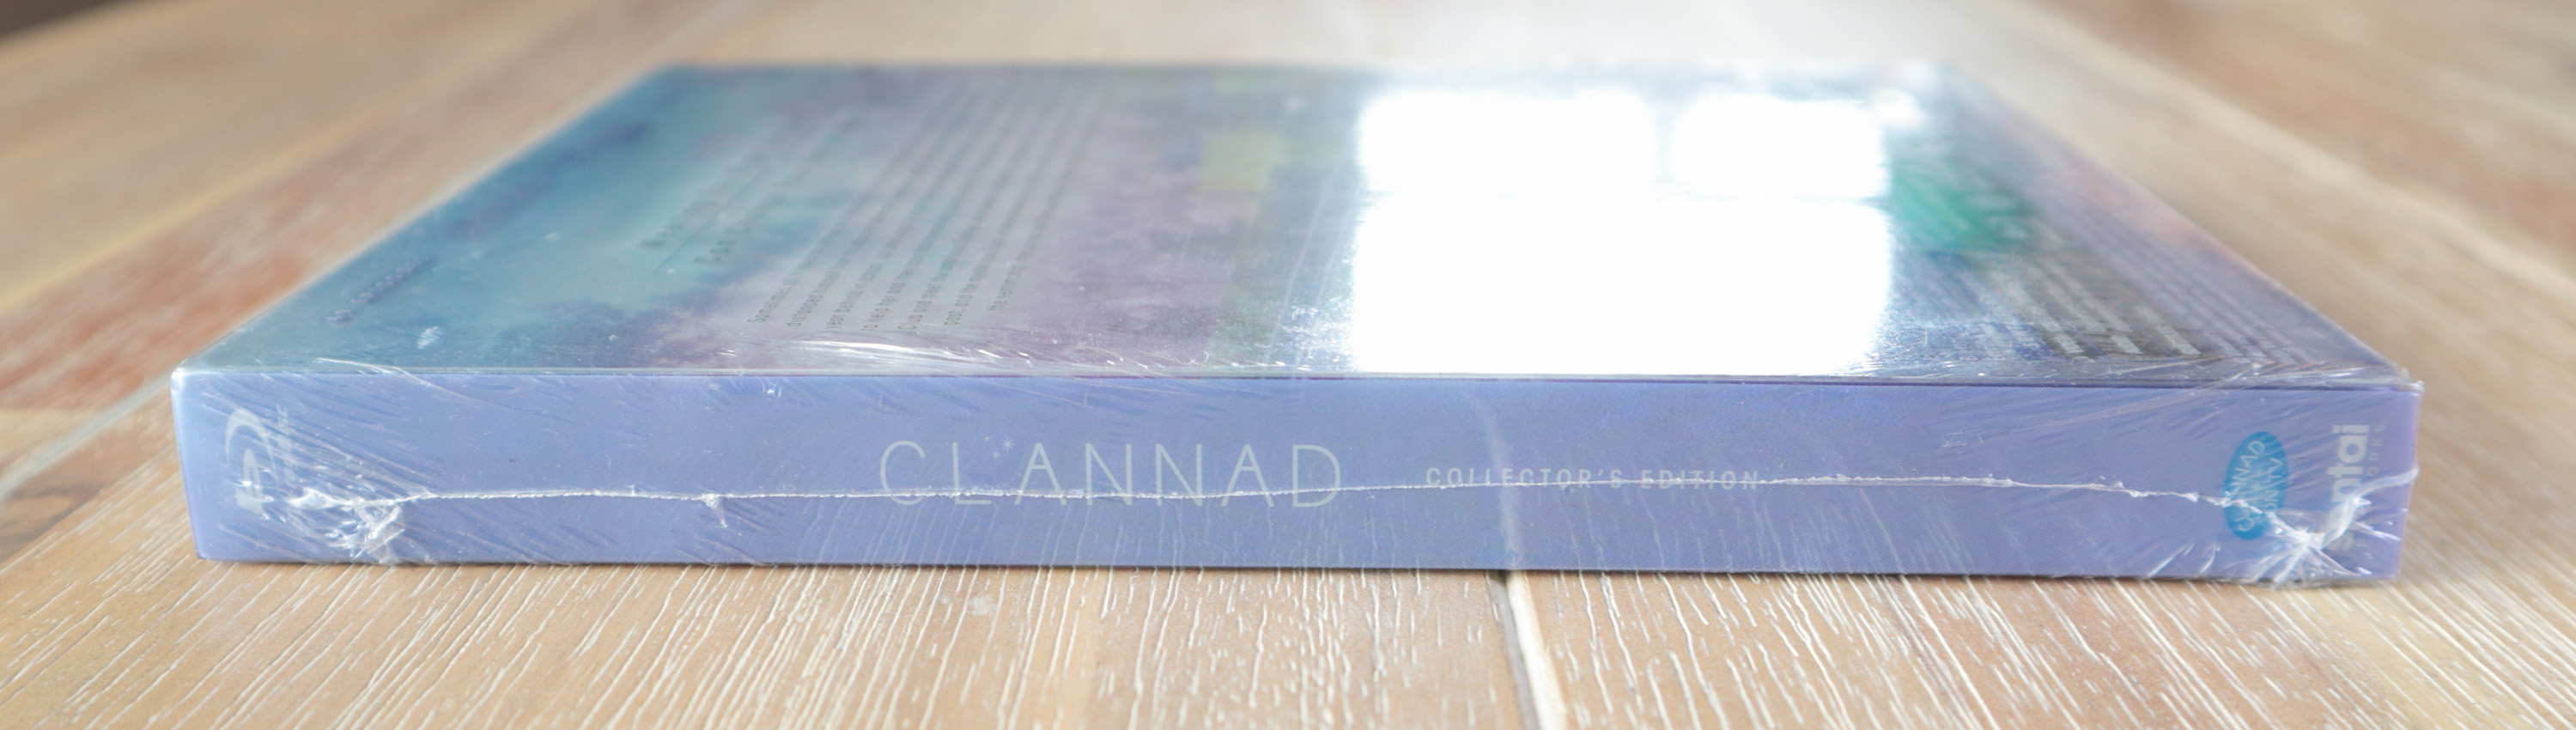 CLANNAD us steelbook クラナド 北米 スチールブック